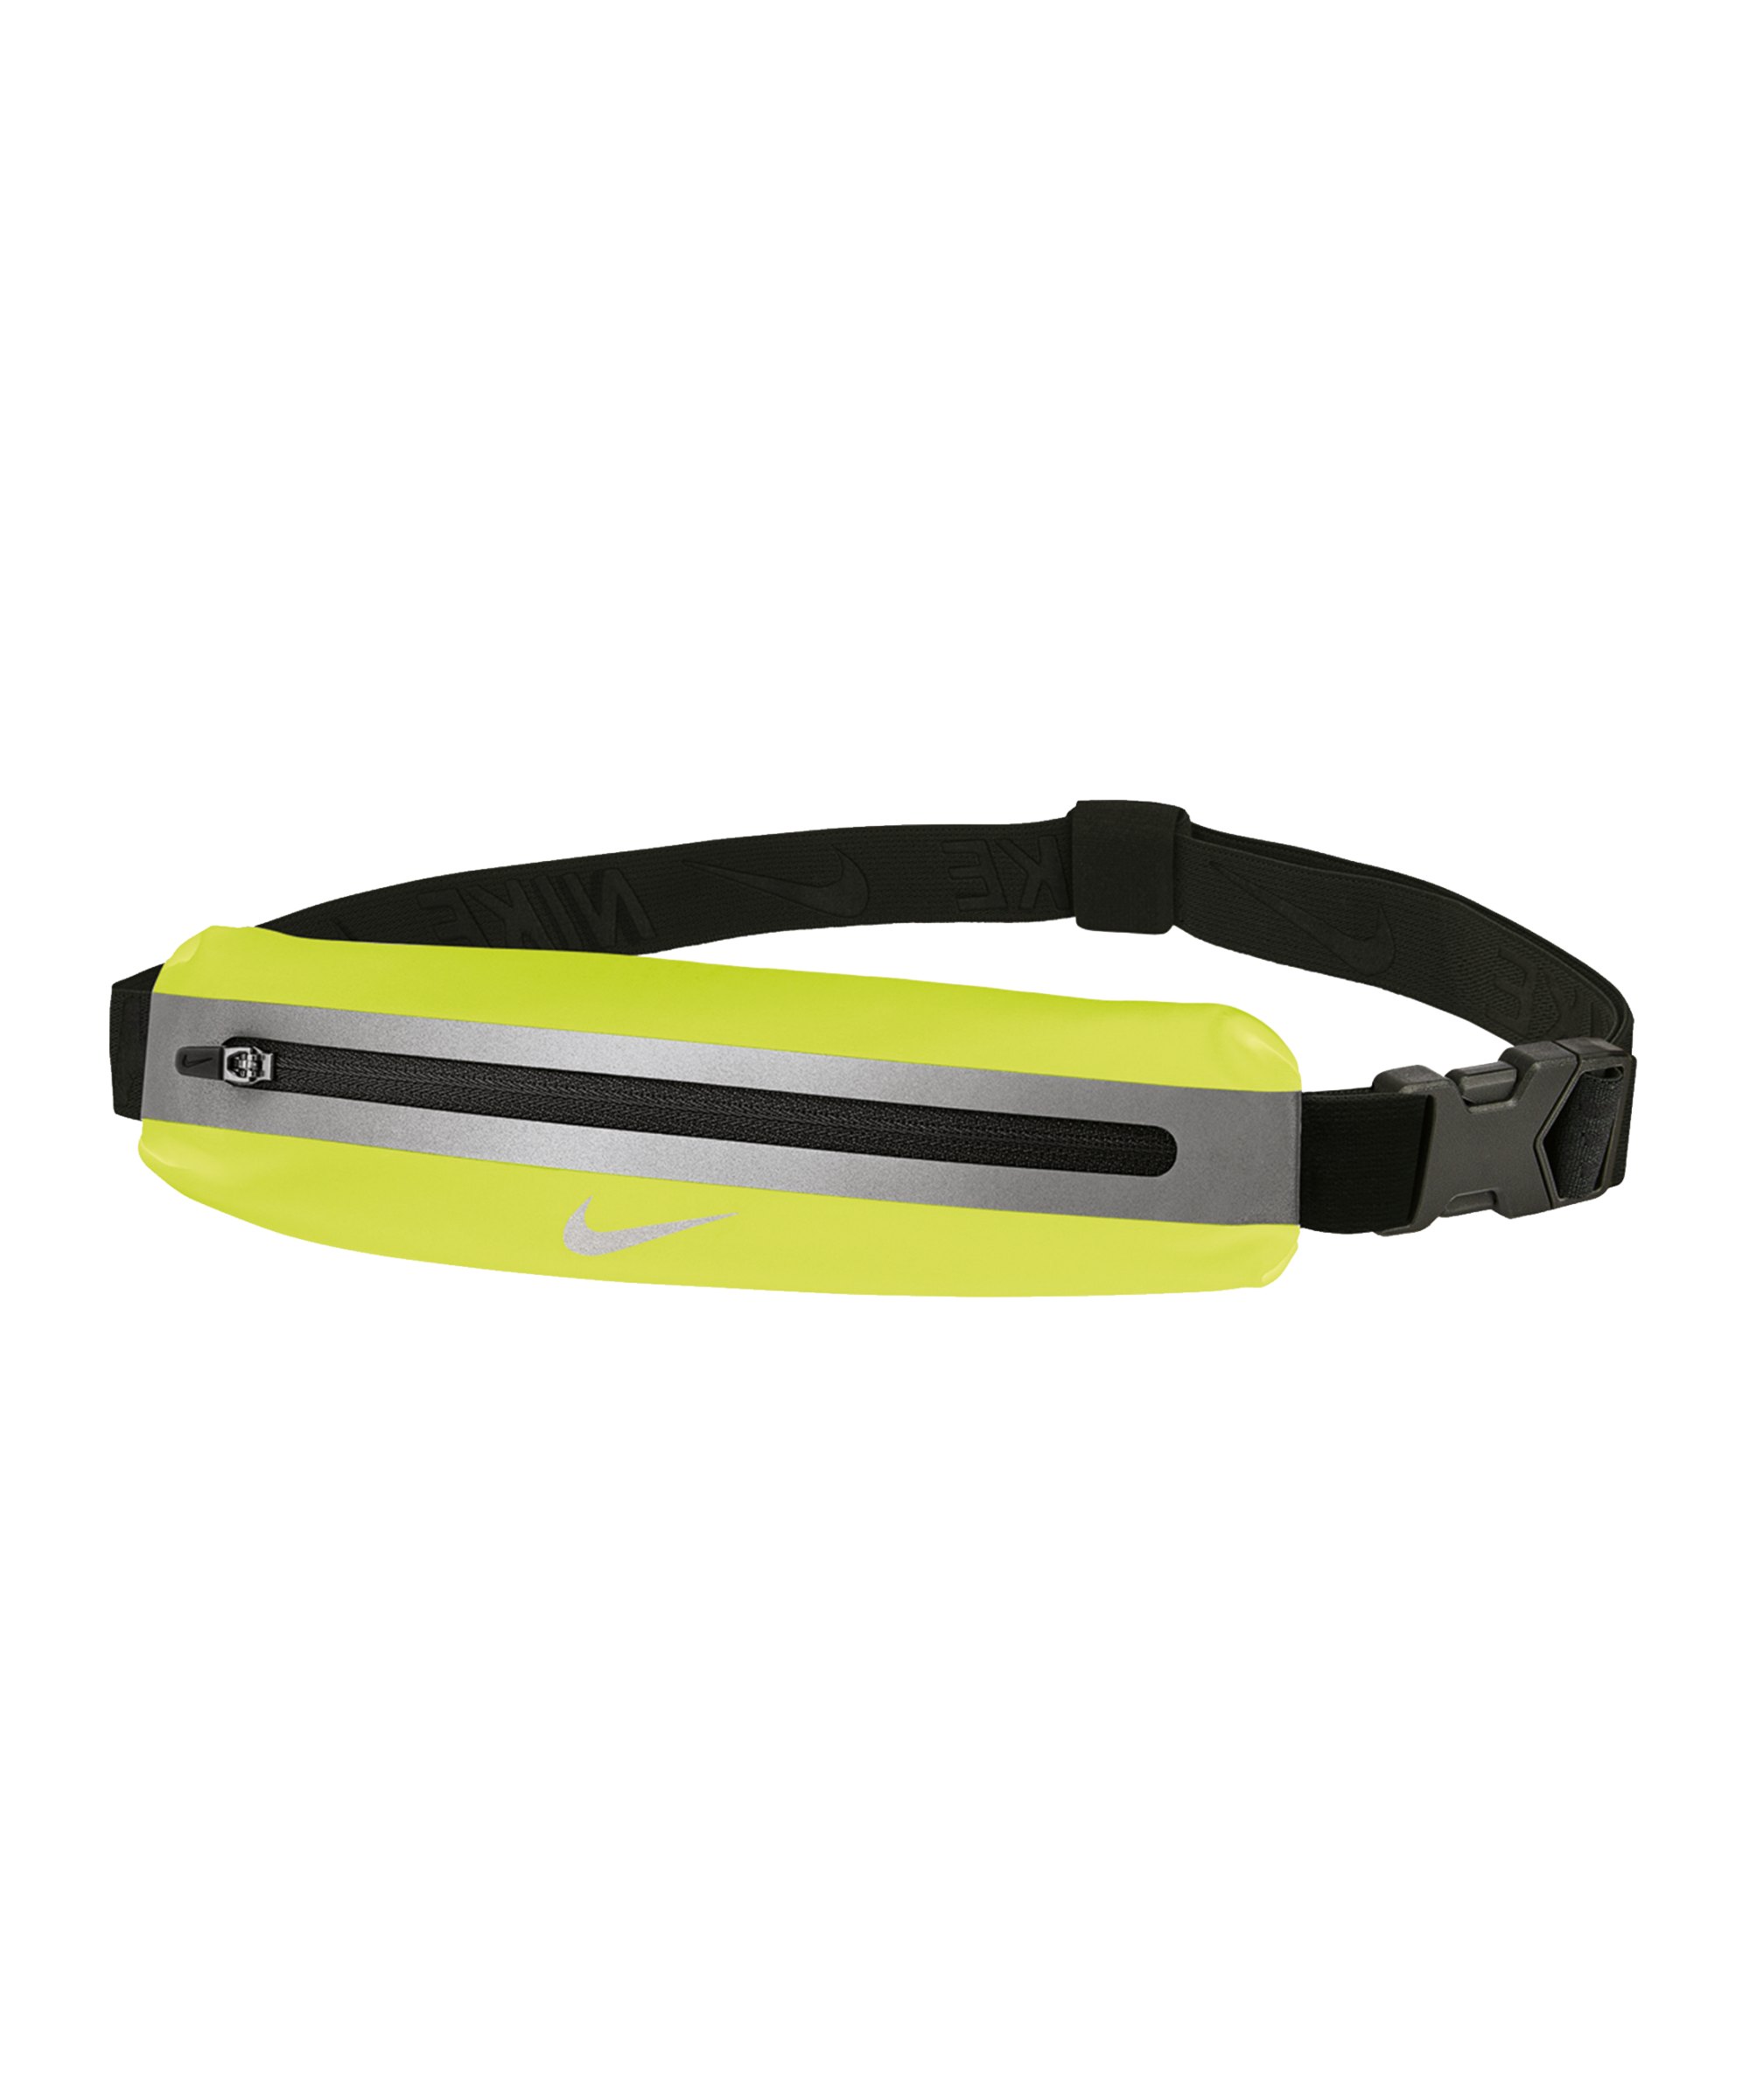 Nike Slim Hüfttasche 3.0 Gelb Schwarz Silber F719 - gelb